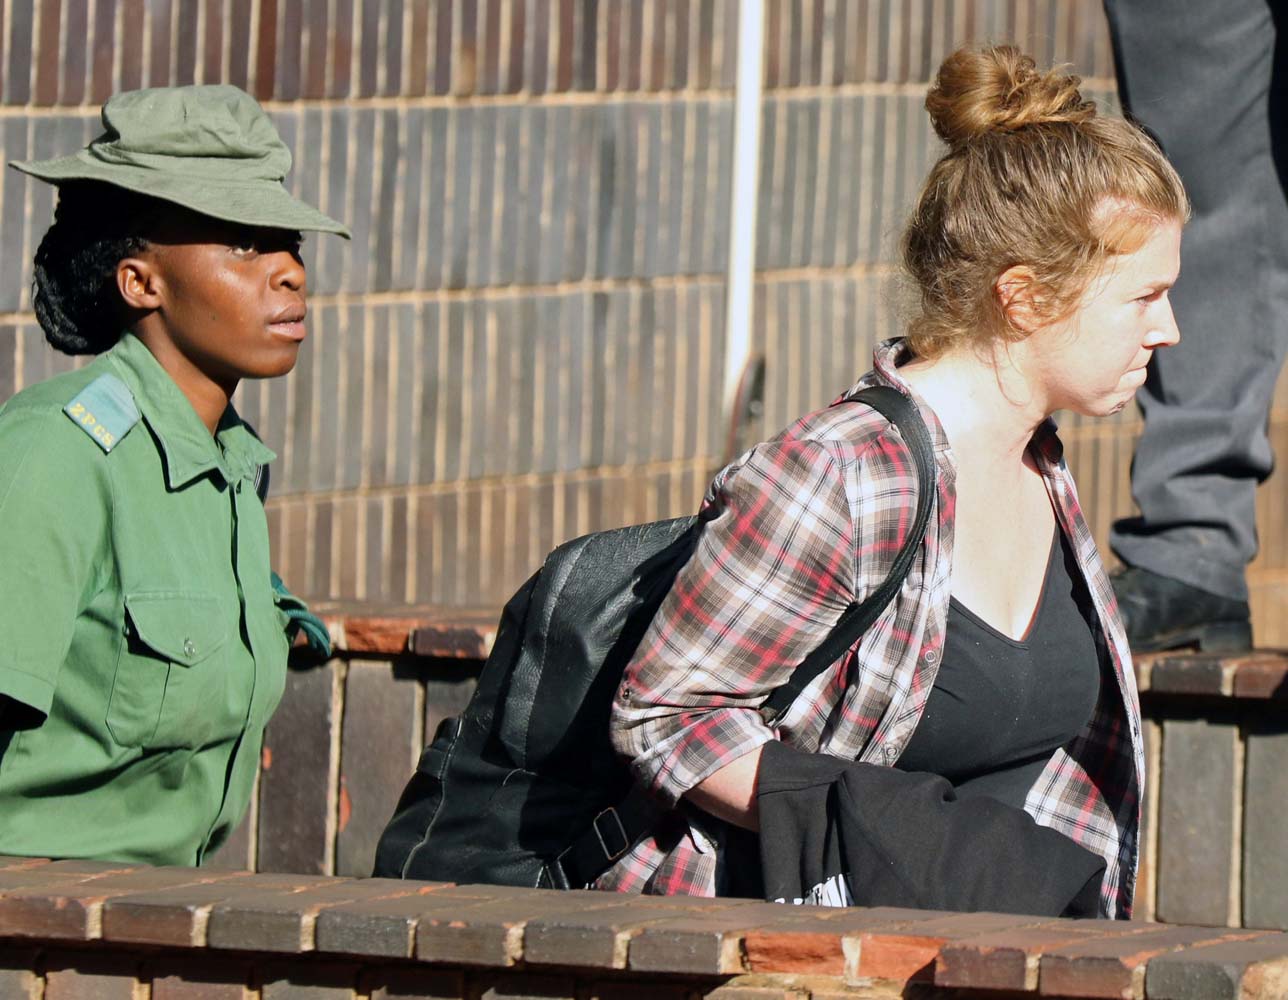 EEUU recomienda a sus ciudadanos en Zimbabue “protegerse” ante situación incierta